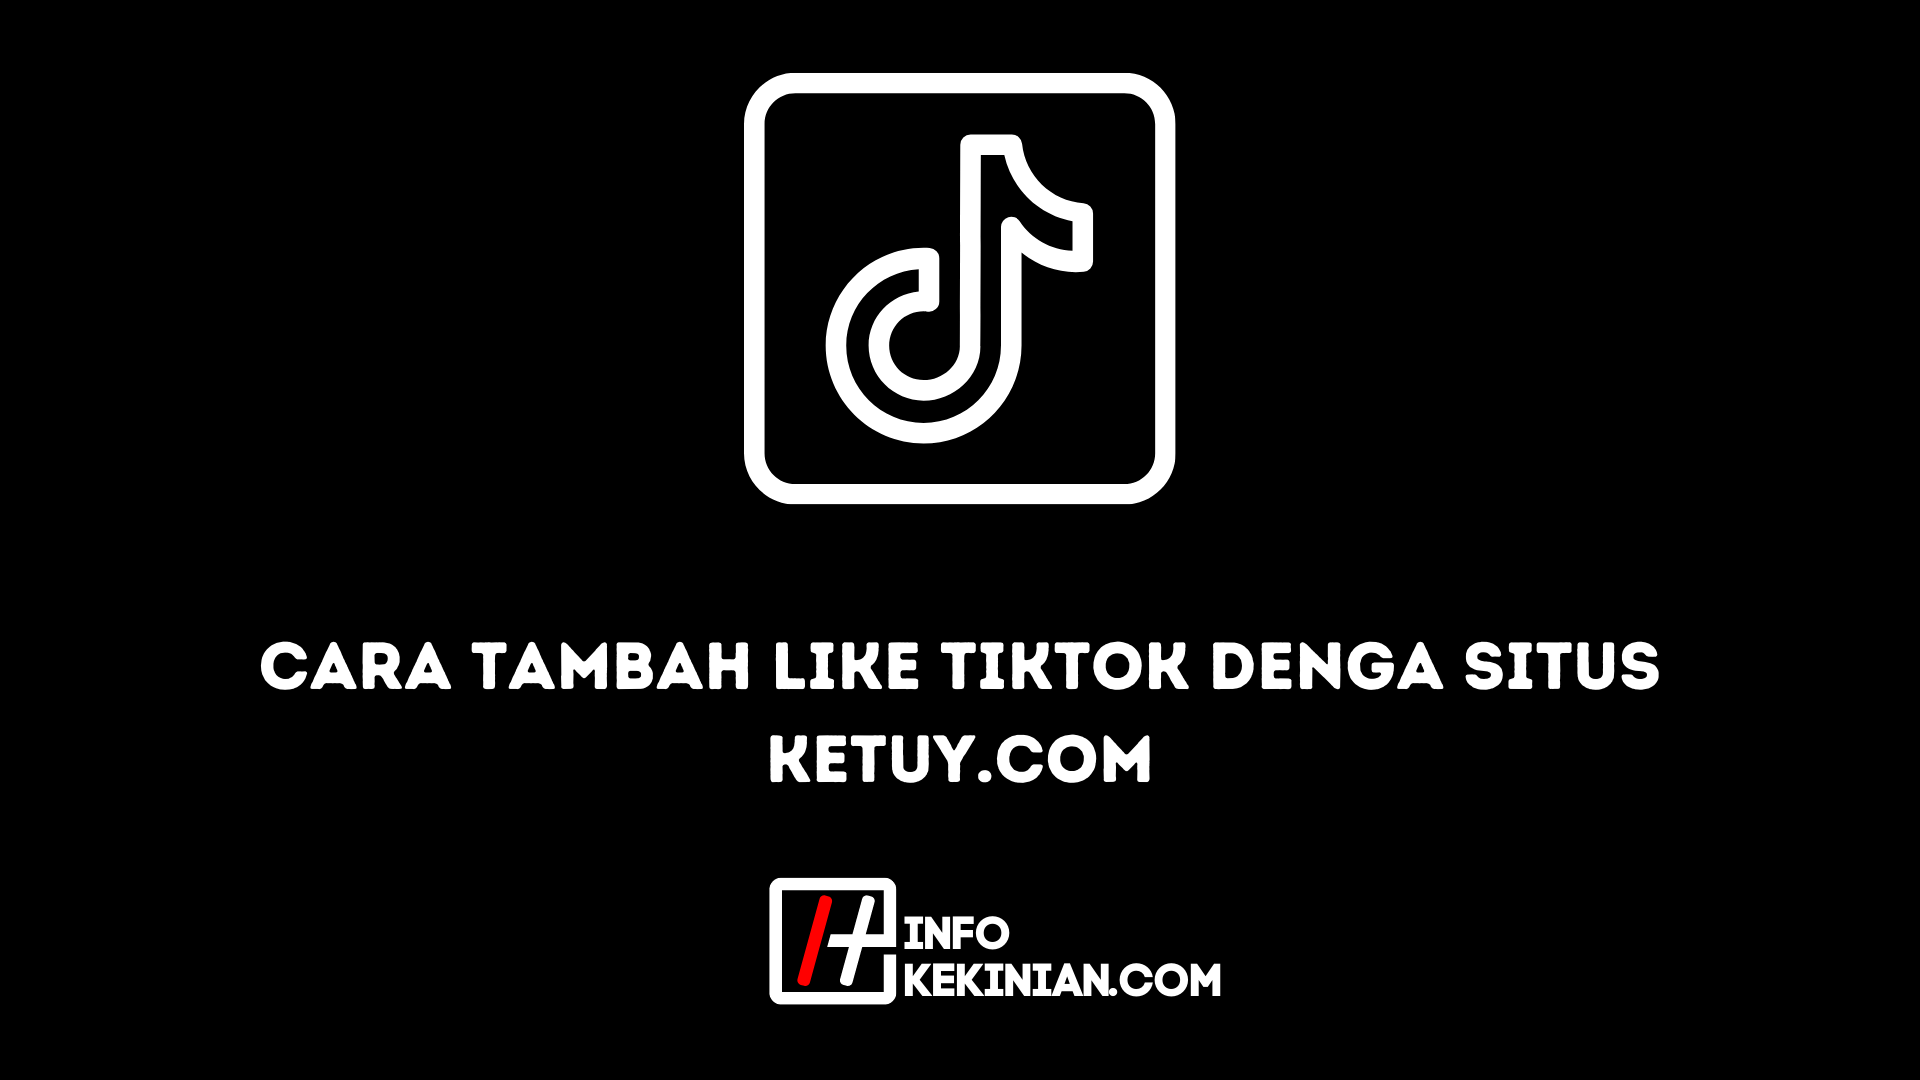 Cara Tambah Like TikTok denga Situs Ketuy.com